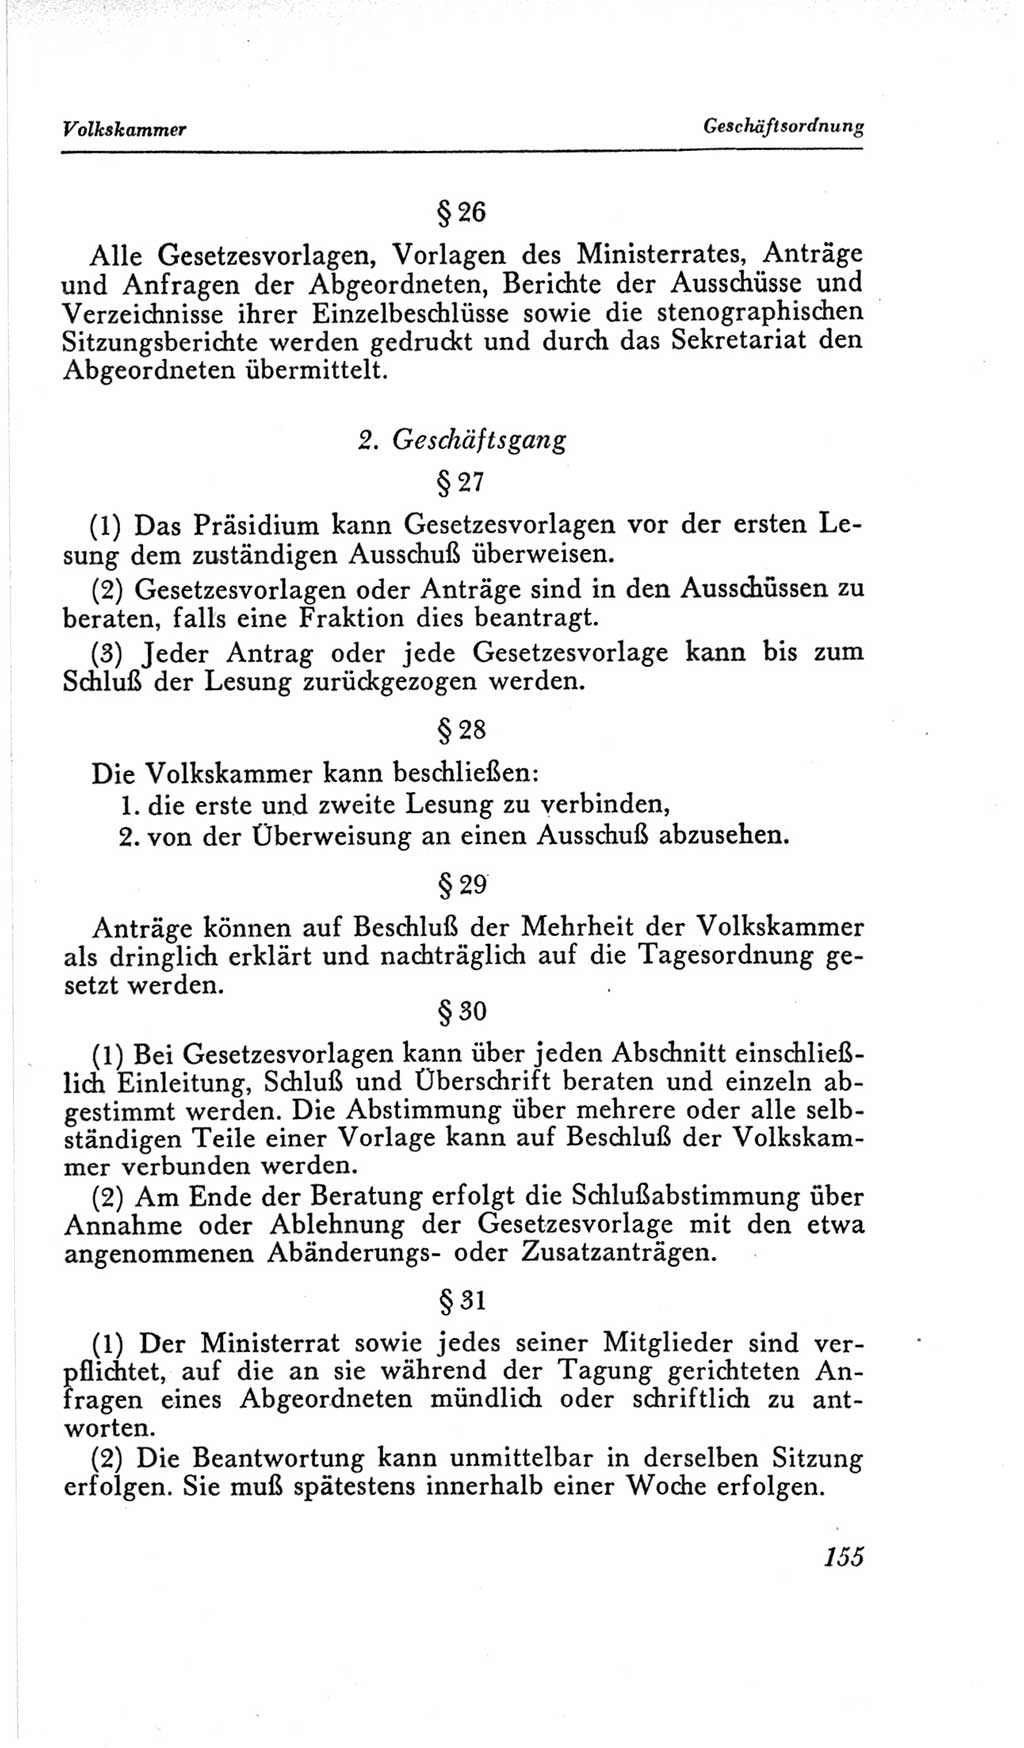 Handbuch der Volkskammer (VK) der Deutschen Demokratischen Republik (DDR), 2. Wahlperiode 1954-1958, Seite 155 (Hdb. VK. DDR, 2. WP. 1954-1958, S. 155)